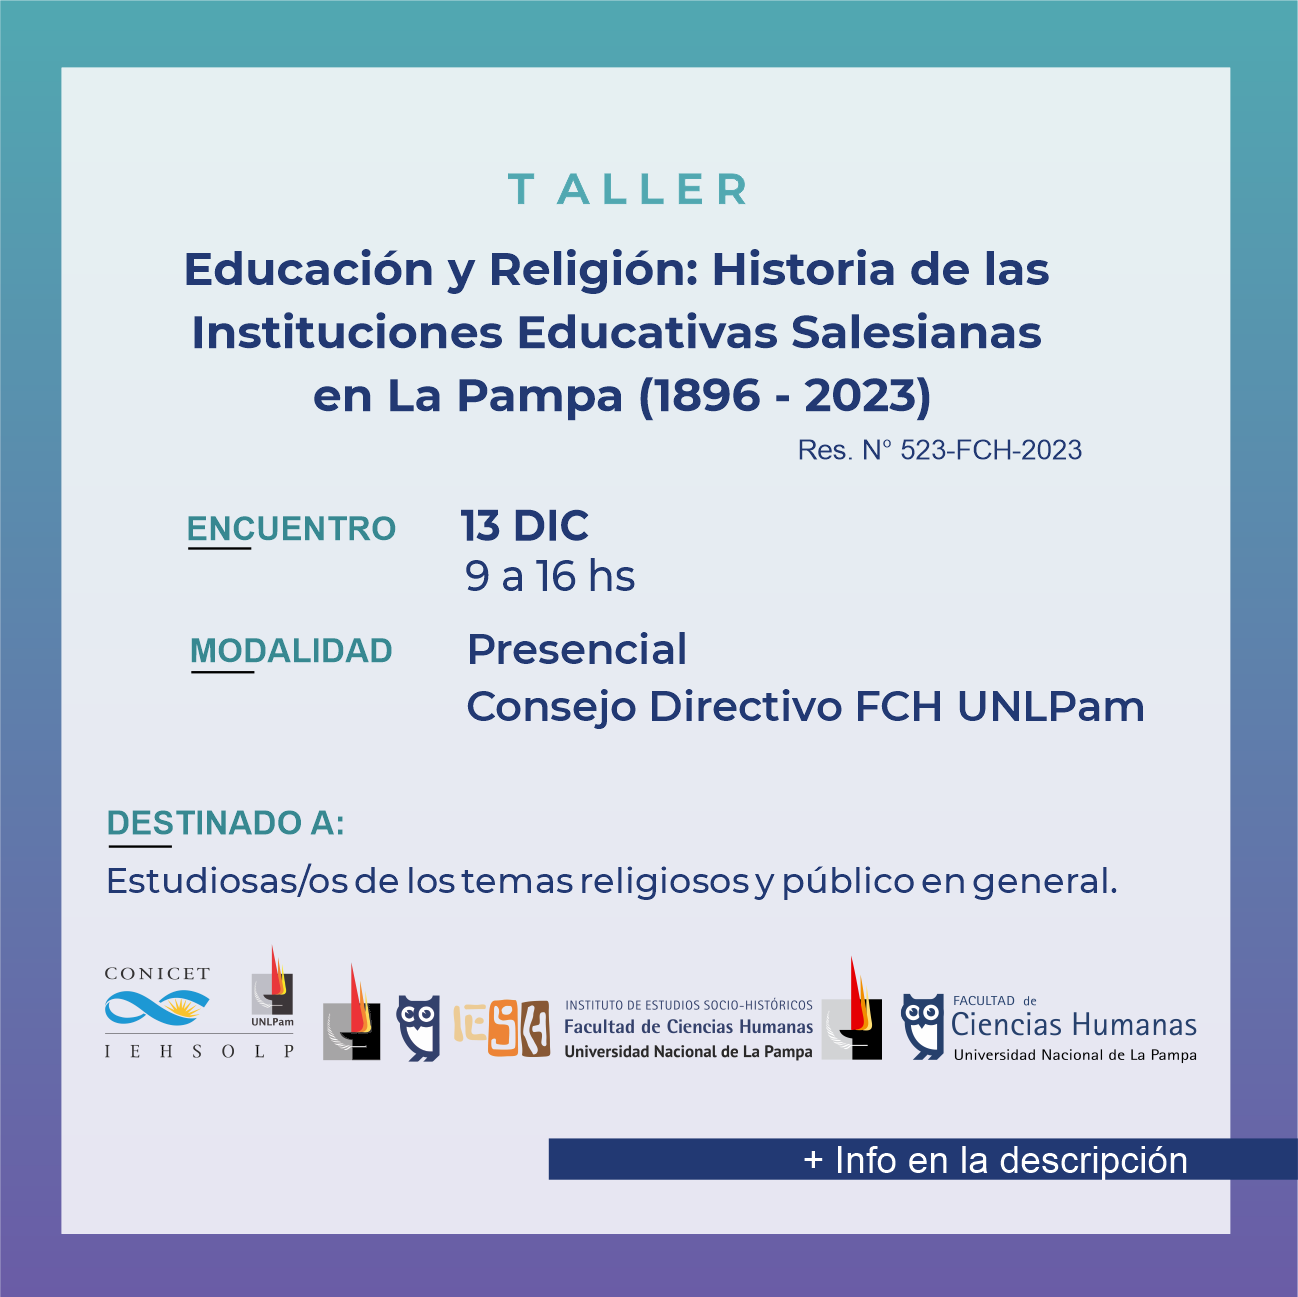 Educación y religión: historia de las instituciones educativas salesianas en La Pampa (1896 - 2023)